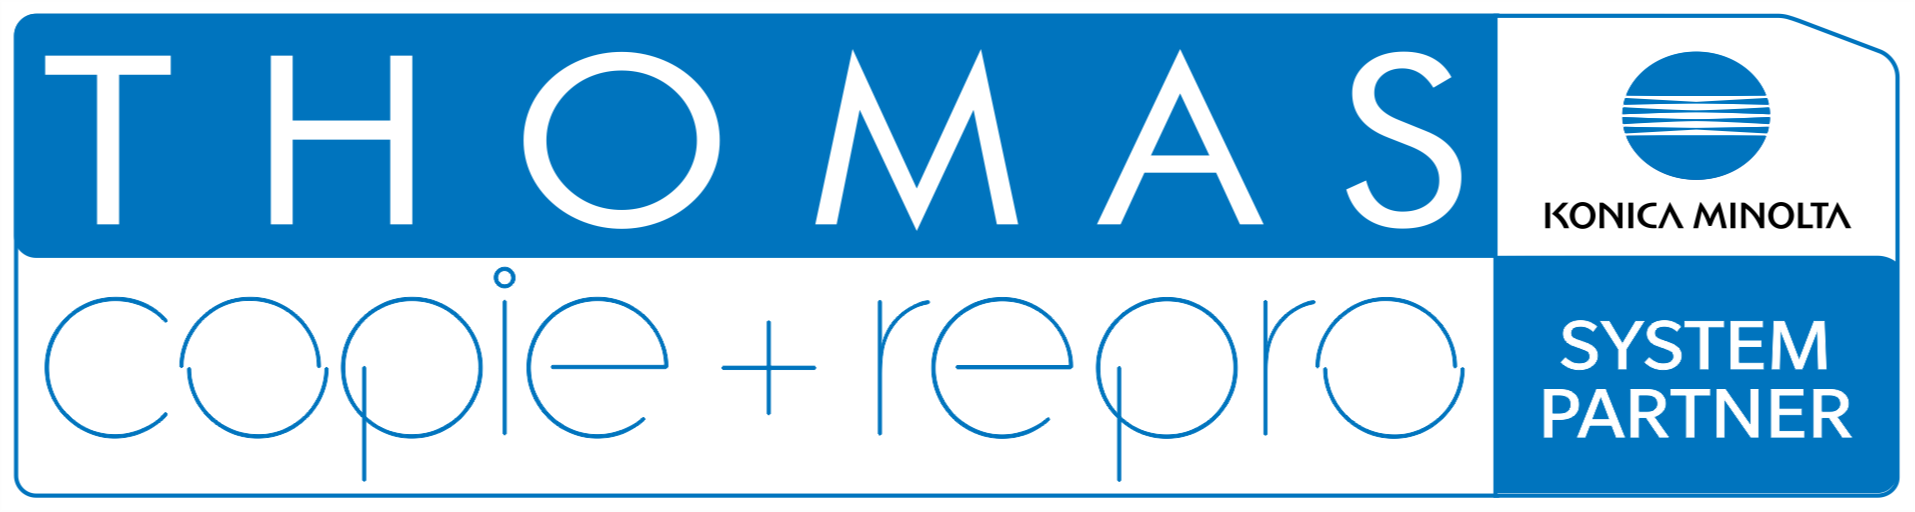 Logo der Firma THOMAS copie + repro e.K. | Druck- und Kopiertechnik | Verkauf | Vermietung | Service aus Bautzen